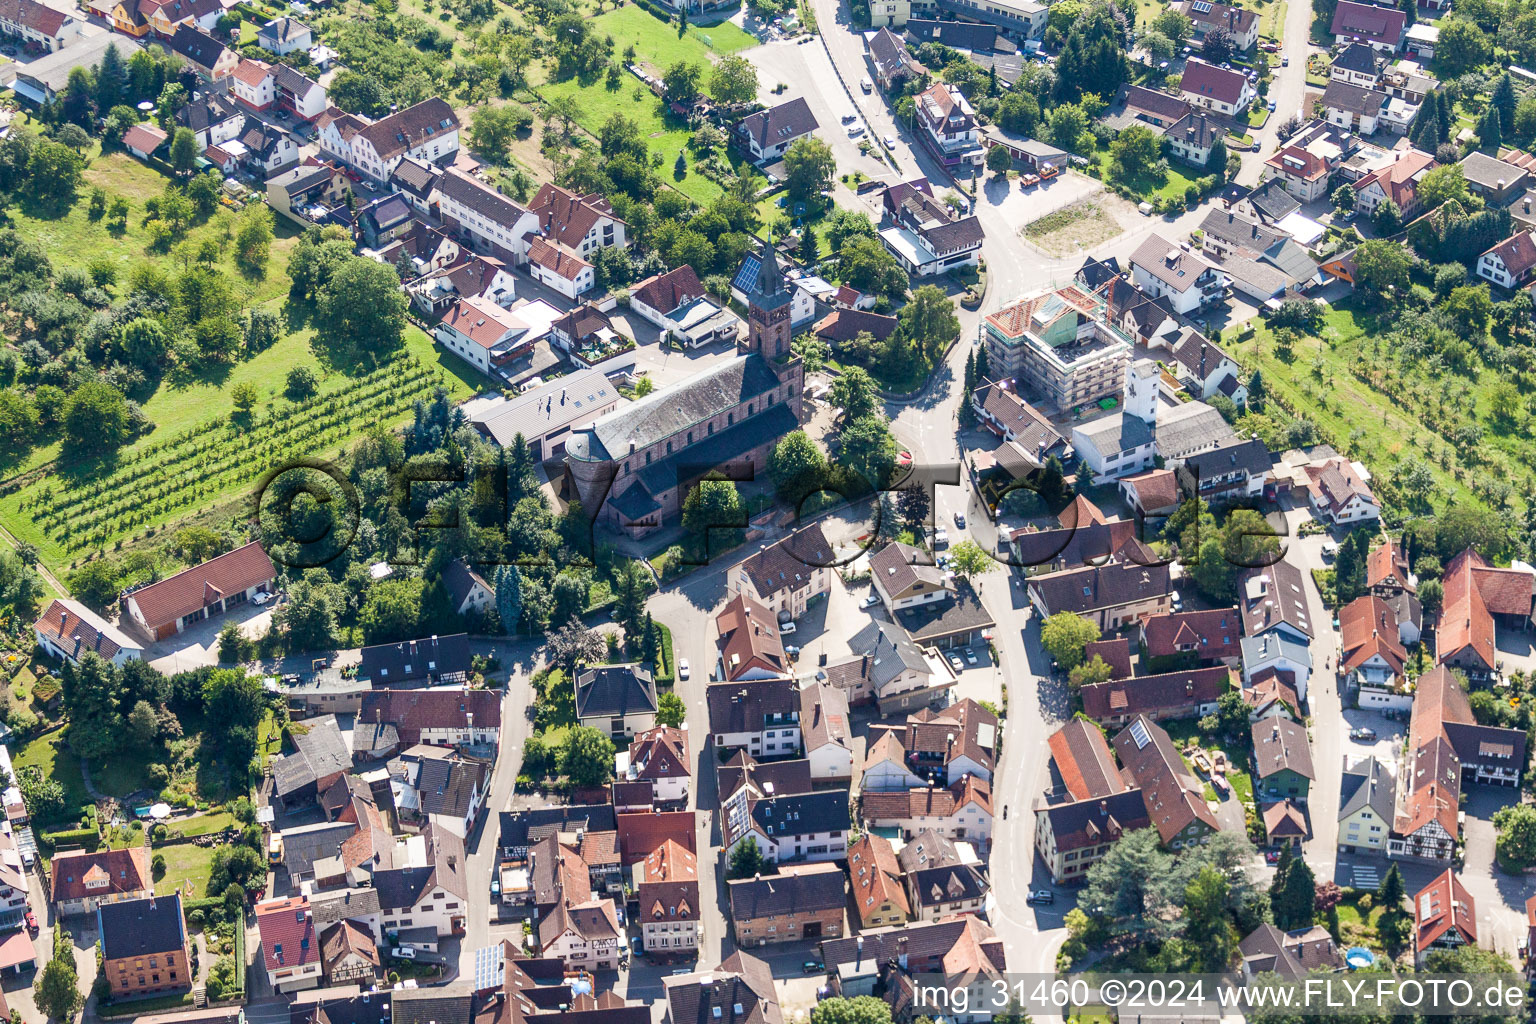 Luftbild von Ortsansicht der Straßen und Häuser der Wohngebiete in Lauf im Bundesland Baden-Württemberg, Deutschland